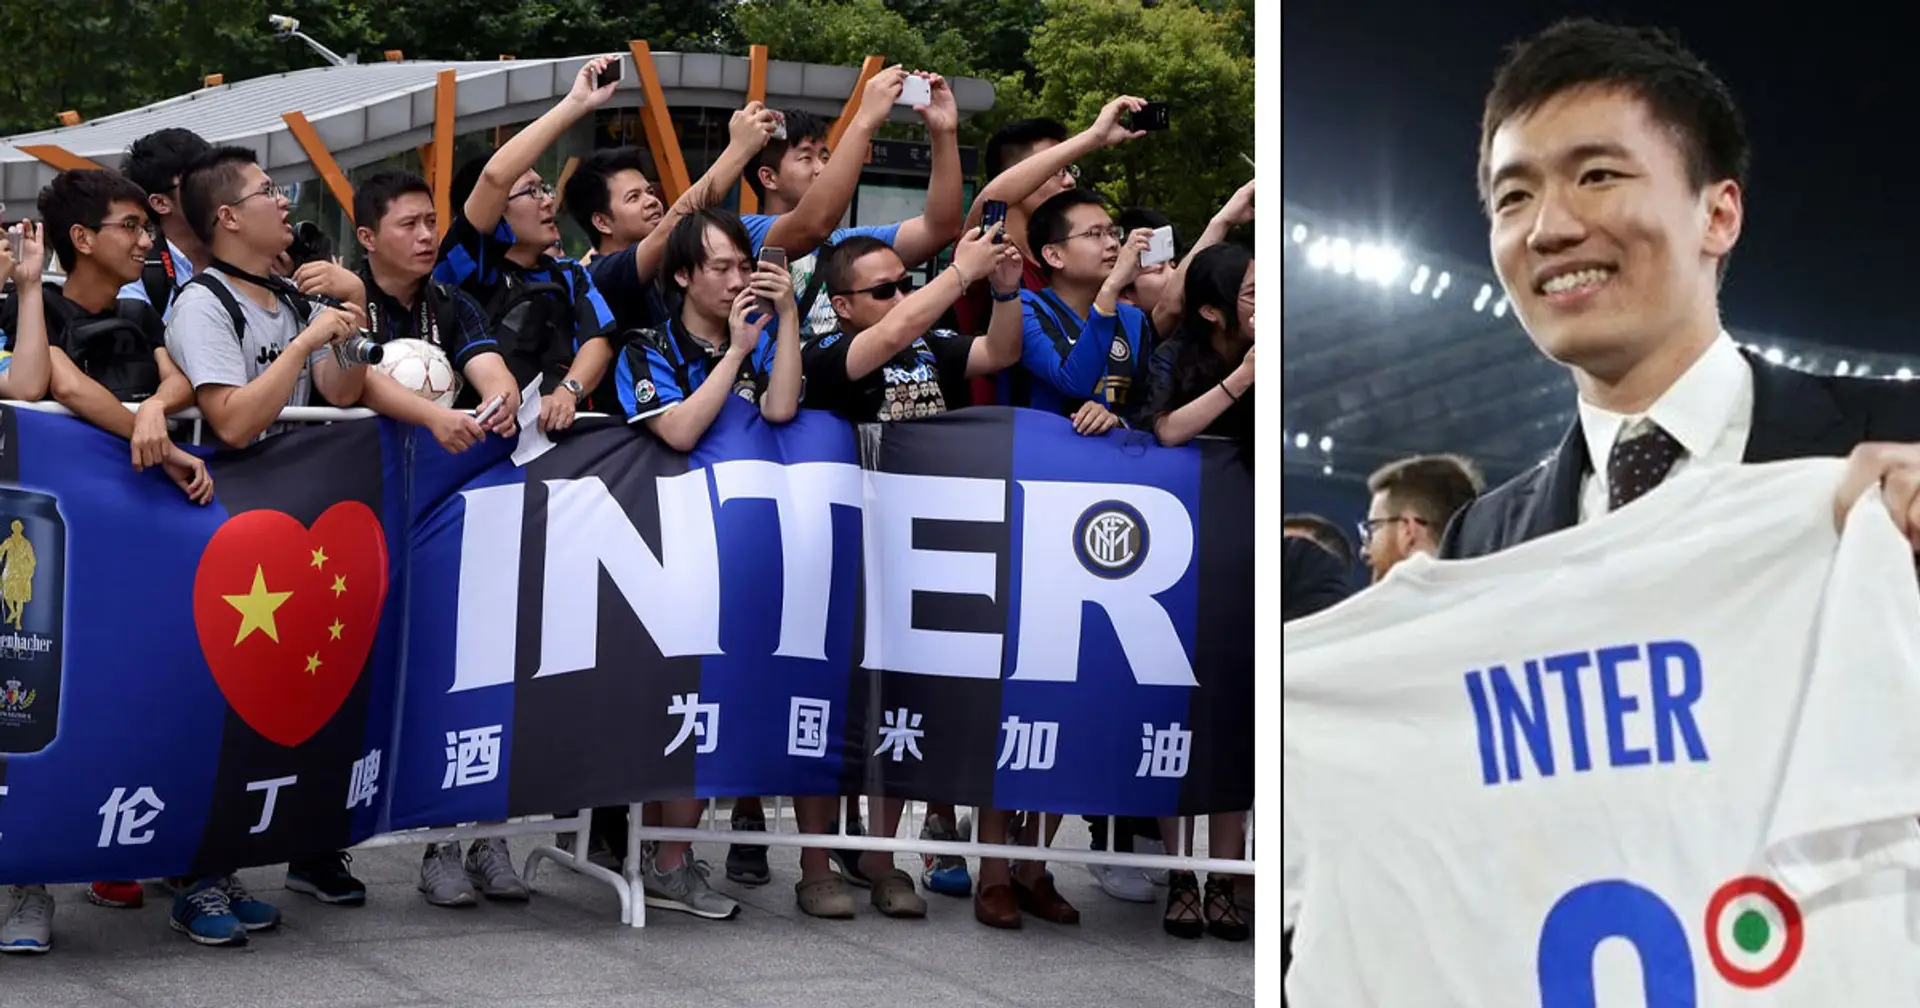 Tournéé estiva in Cina per l'Inter: la squadra di Inzaghi disputerà 2 amichevoli di lusso, i dettagli